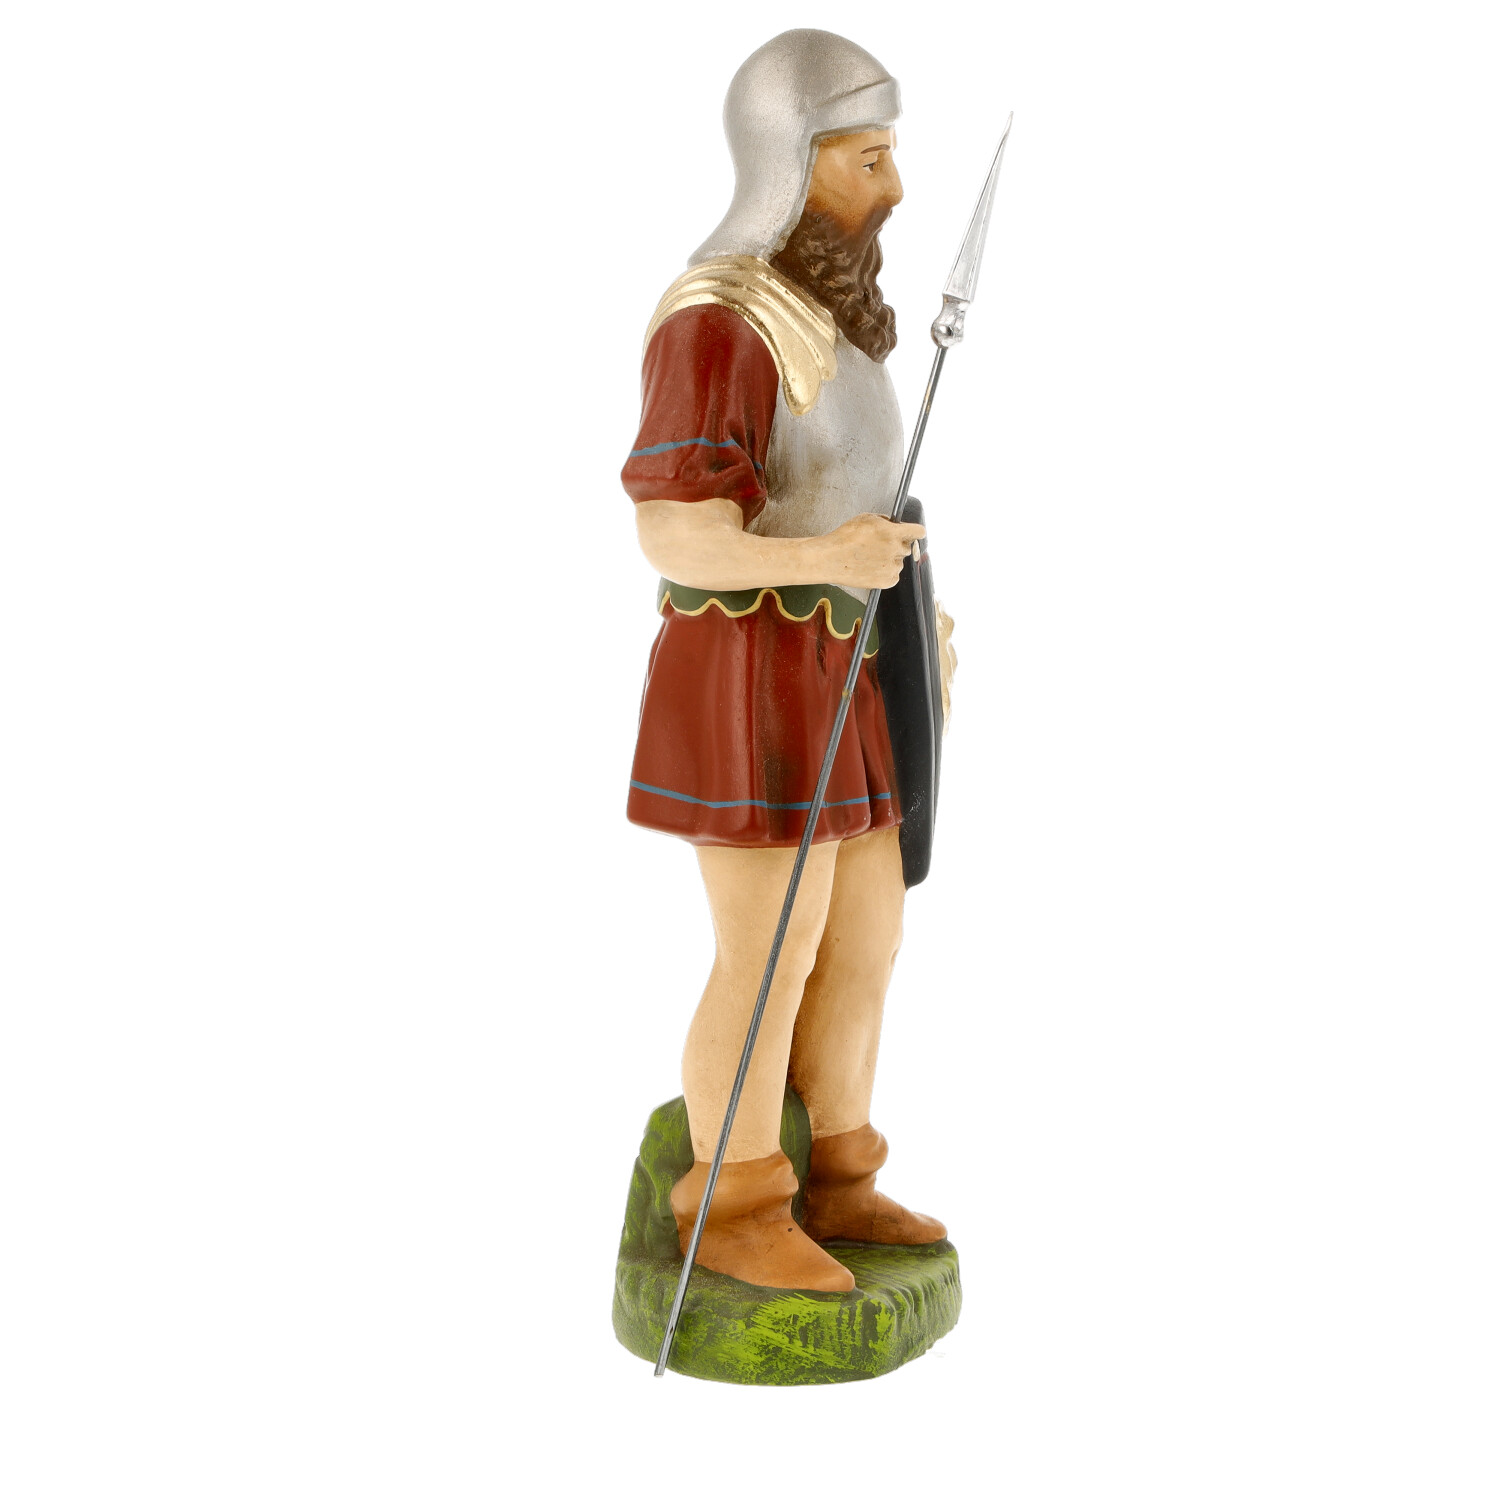 Römischer Soldat mit Lanze, zu 14cm Figuren - Marolin Krippenfigur - made in Germany